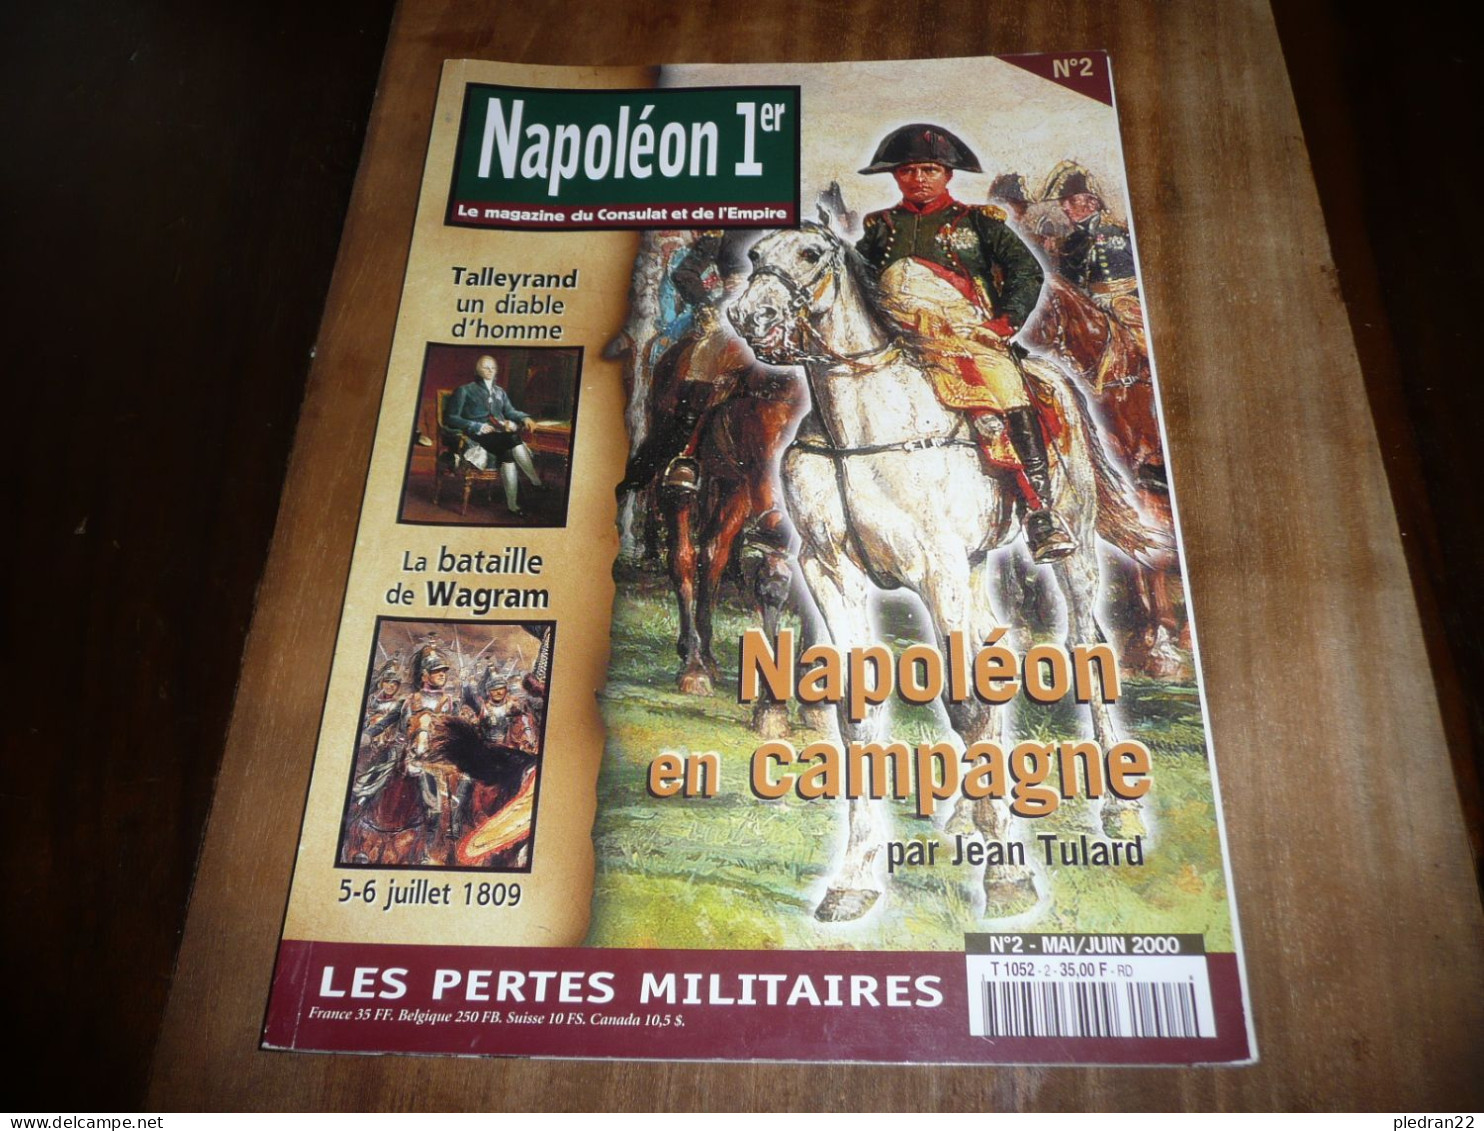 REVUE NAPOLEON 1er LE MAGAZINE DU CONSULAT ET DE L'EMPIRE N° 2 MAI JUIN 2000 - History